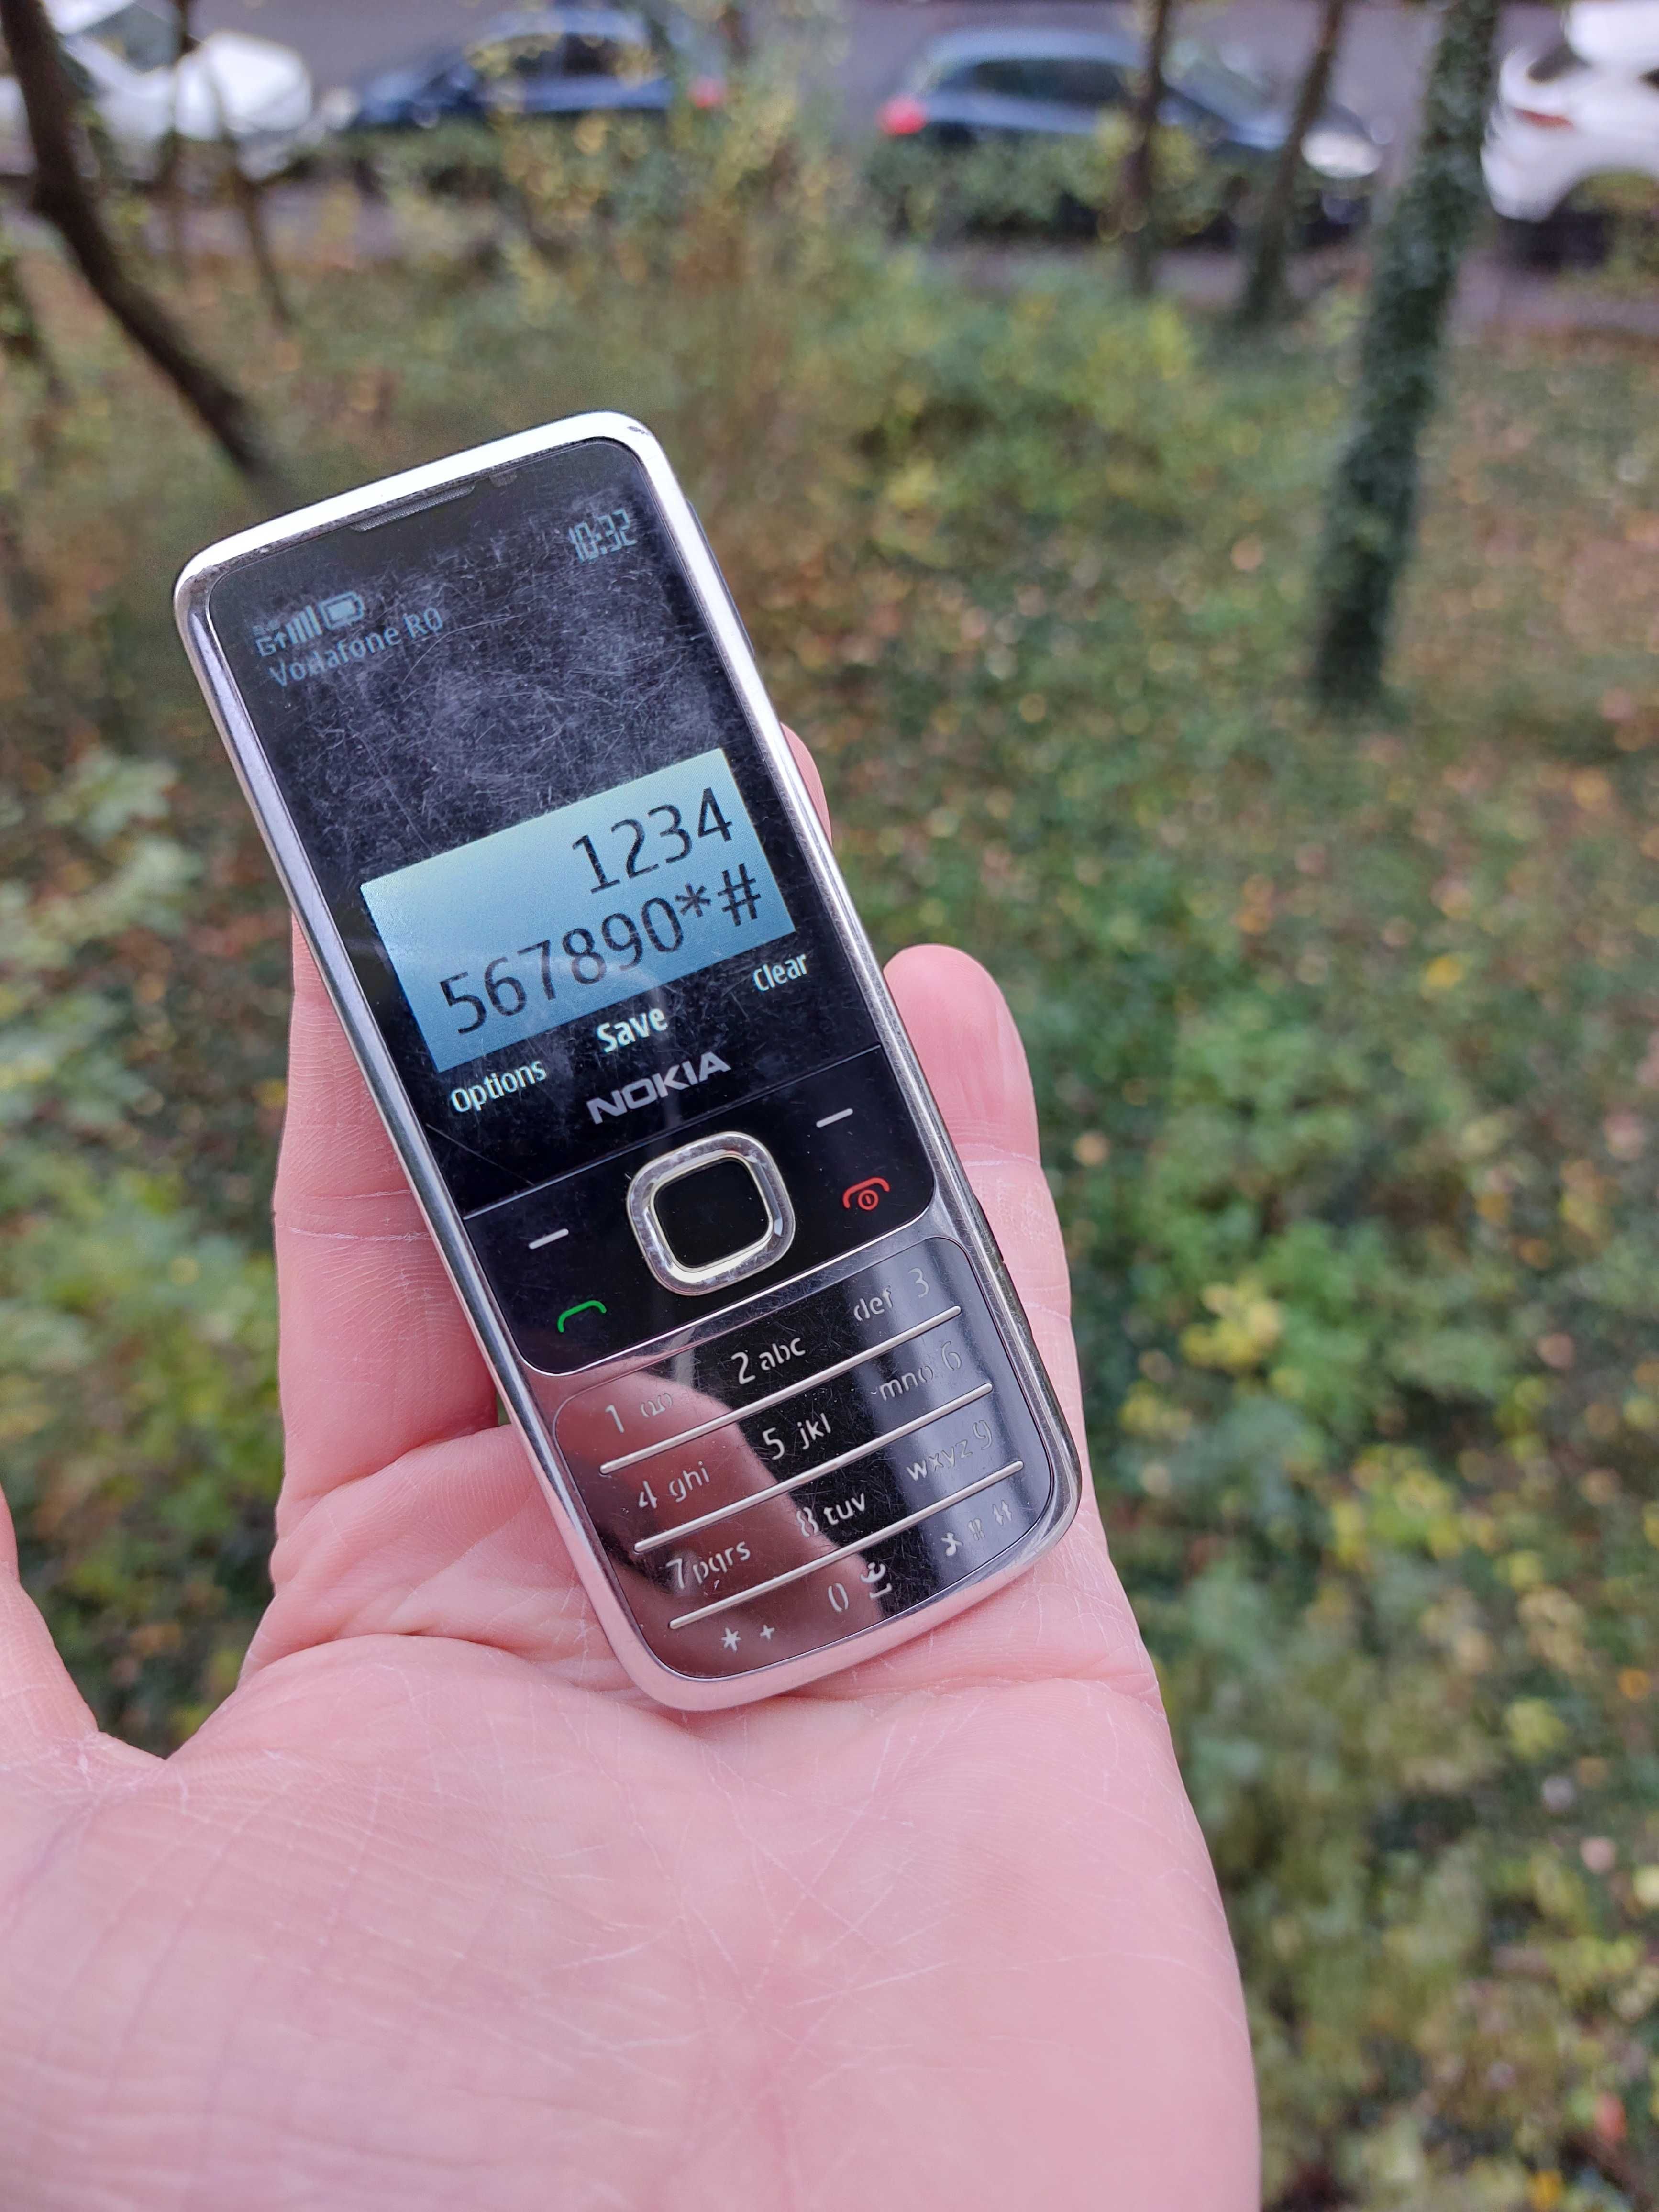 Nokia 6700 original Ungaria necodat nedesfacut doar 8 ore vorbit pe el